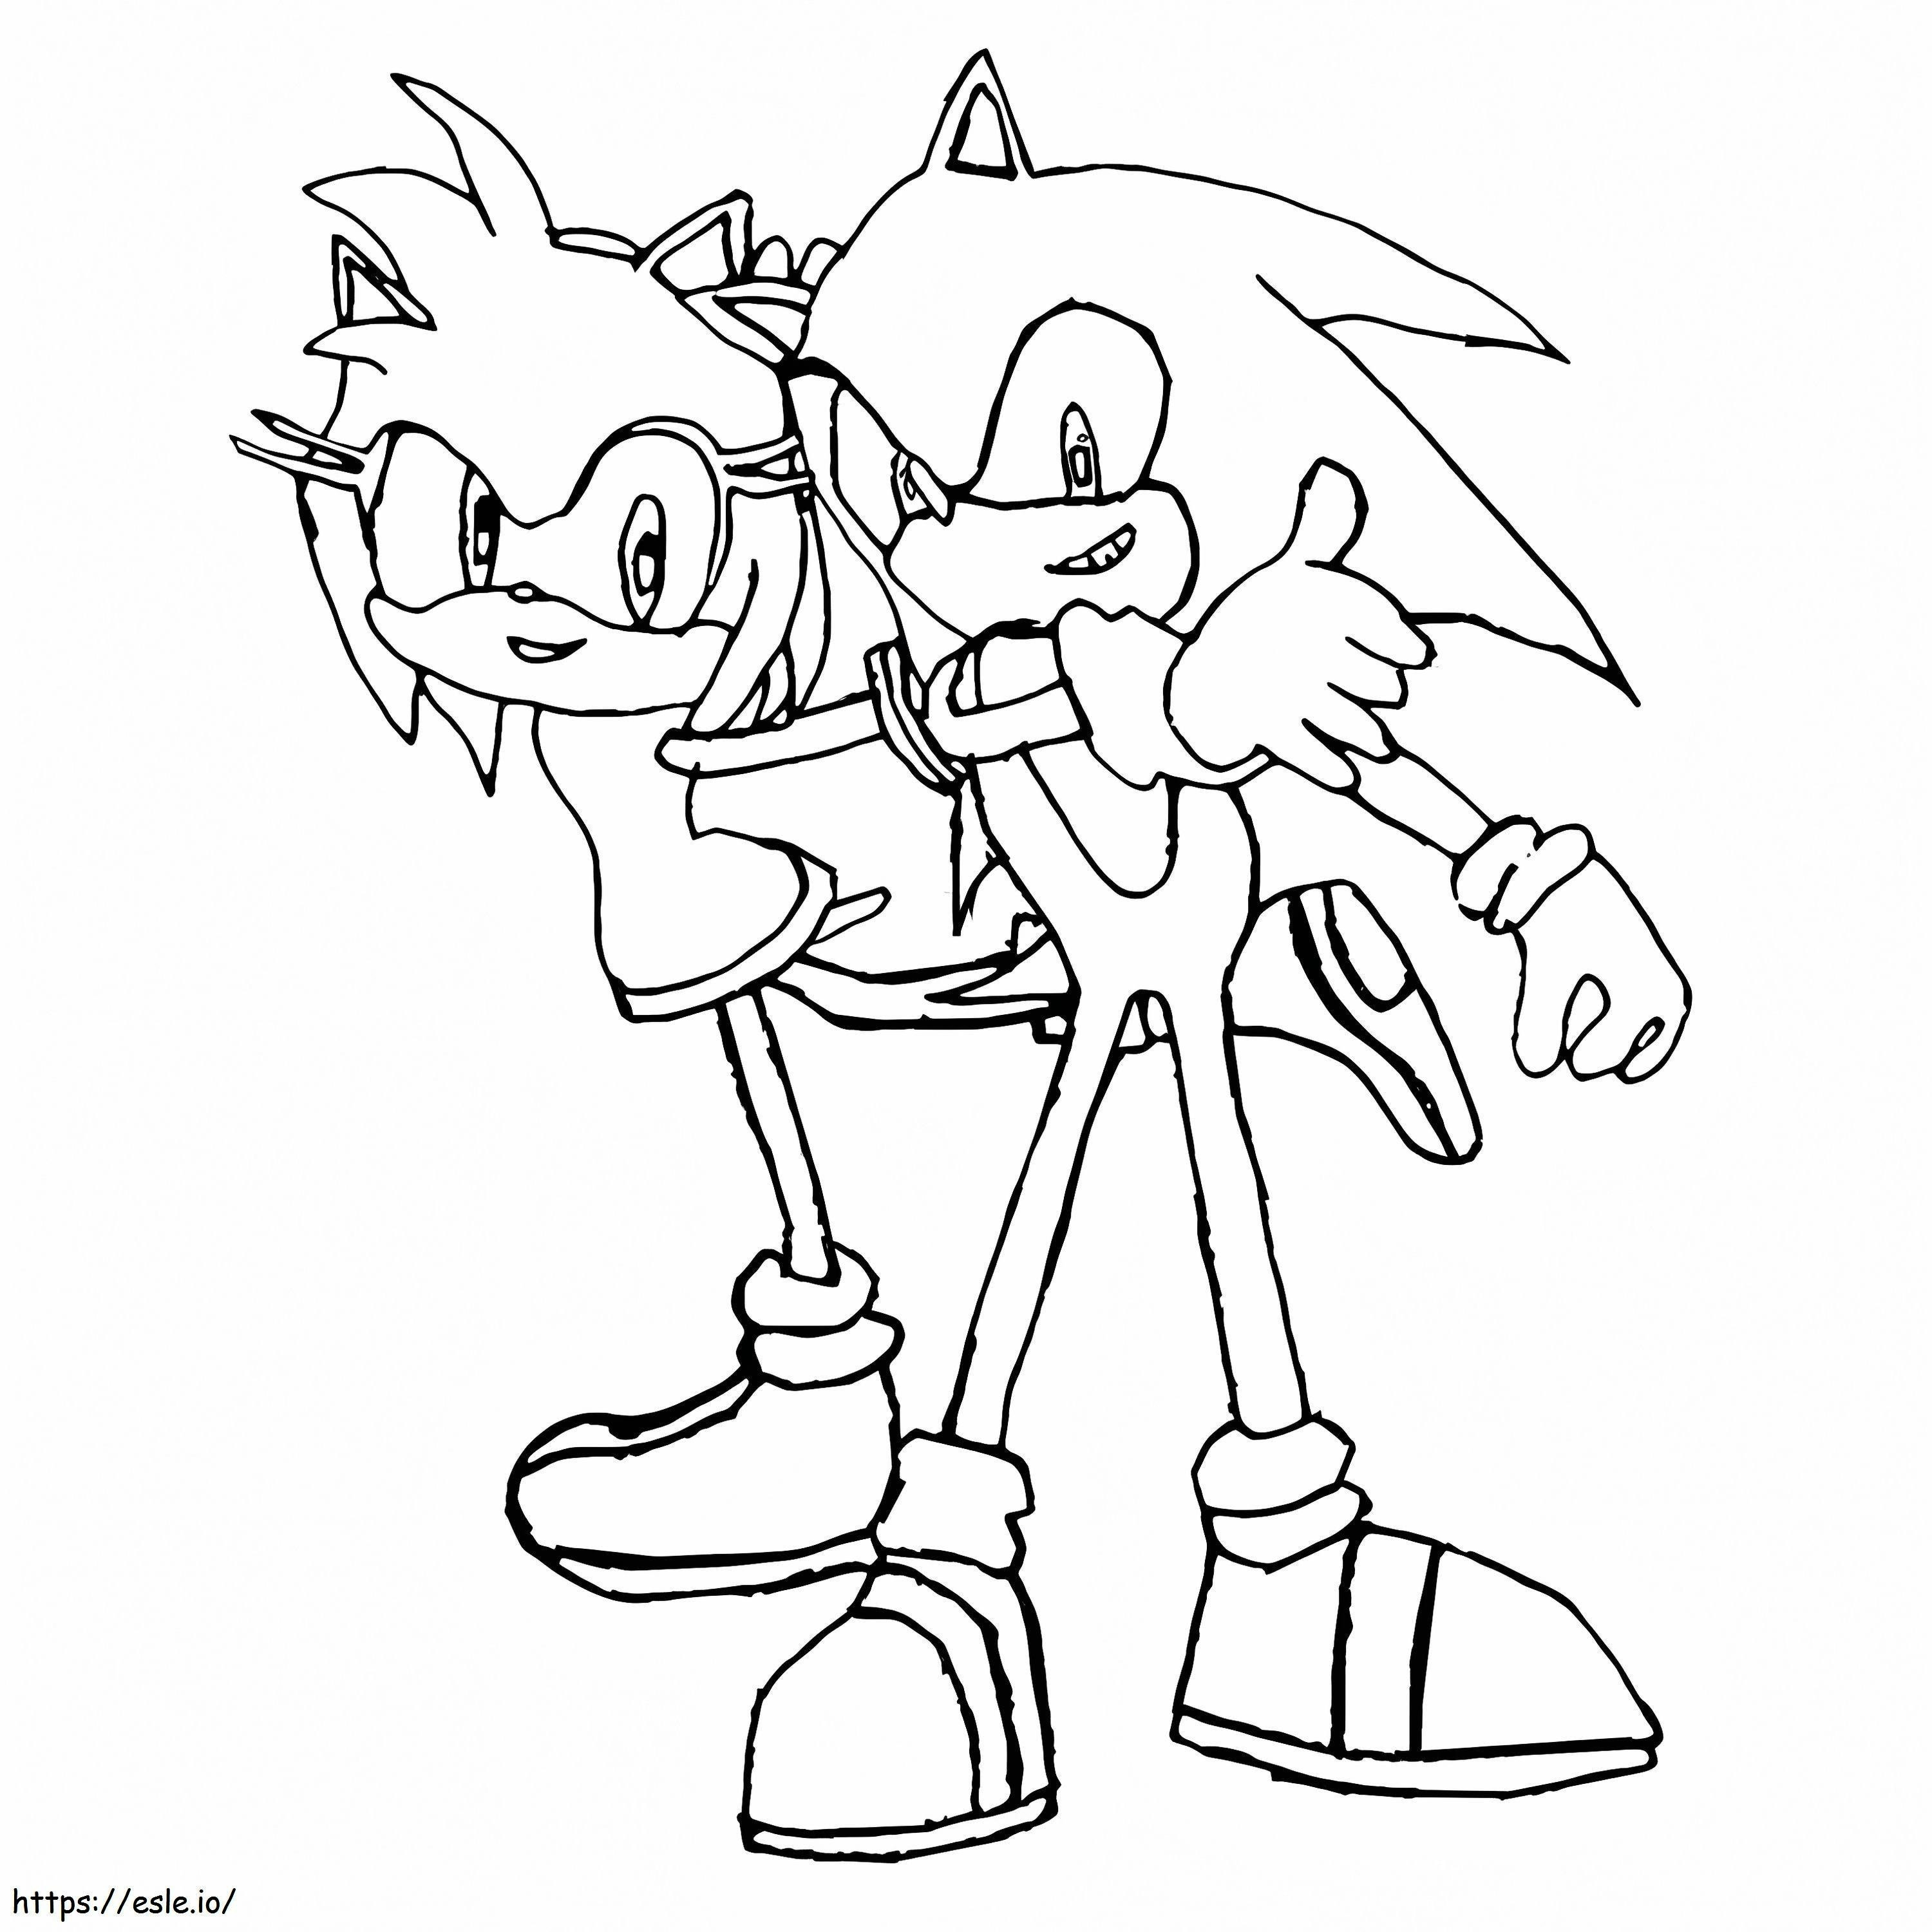 Sonic și Amy Rose de colorat